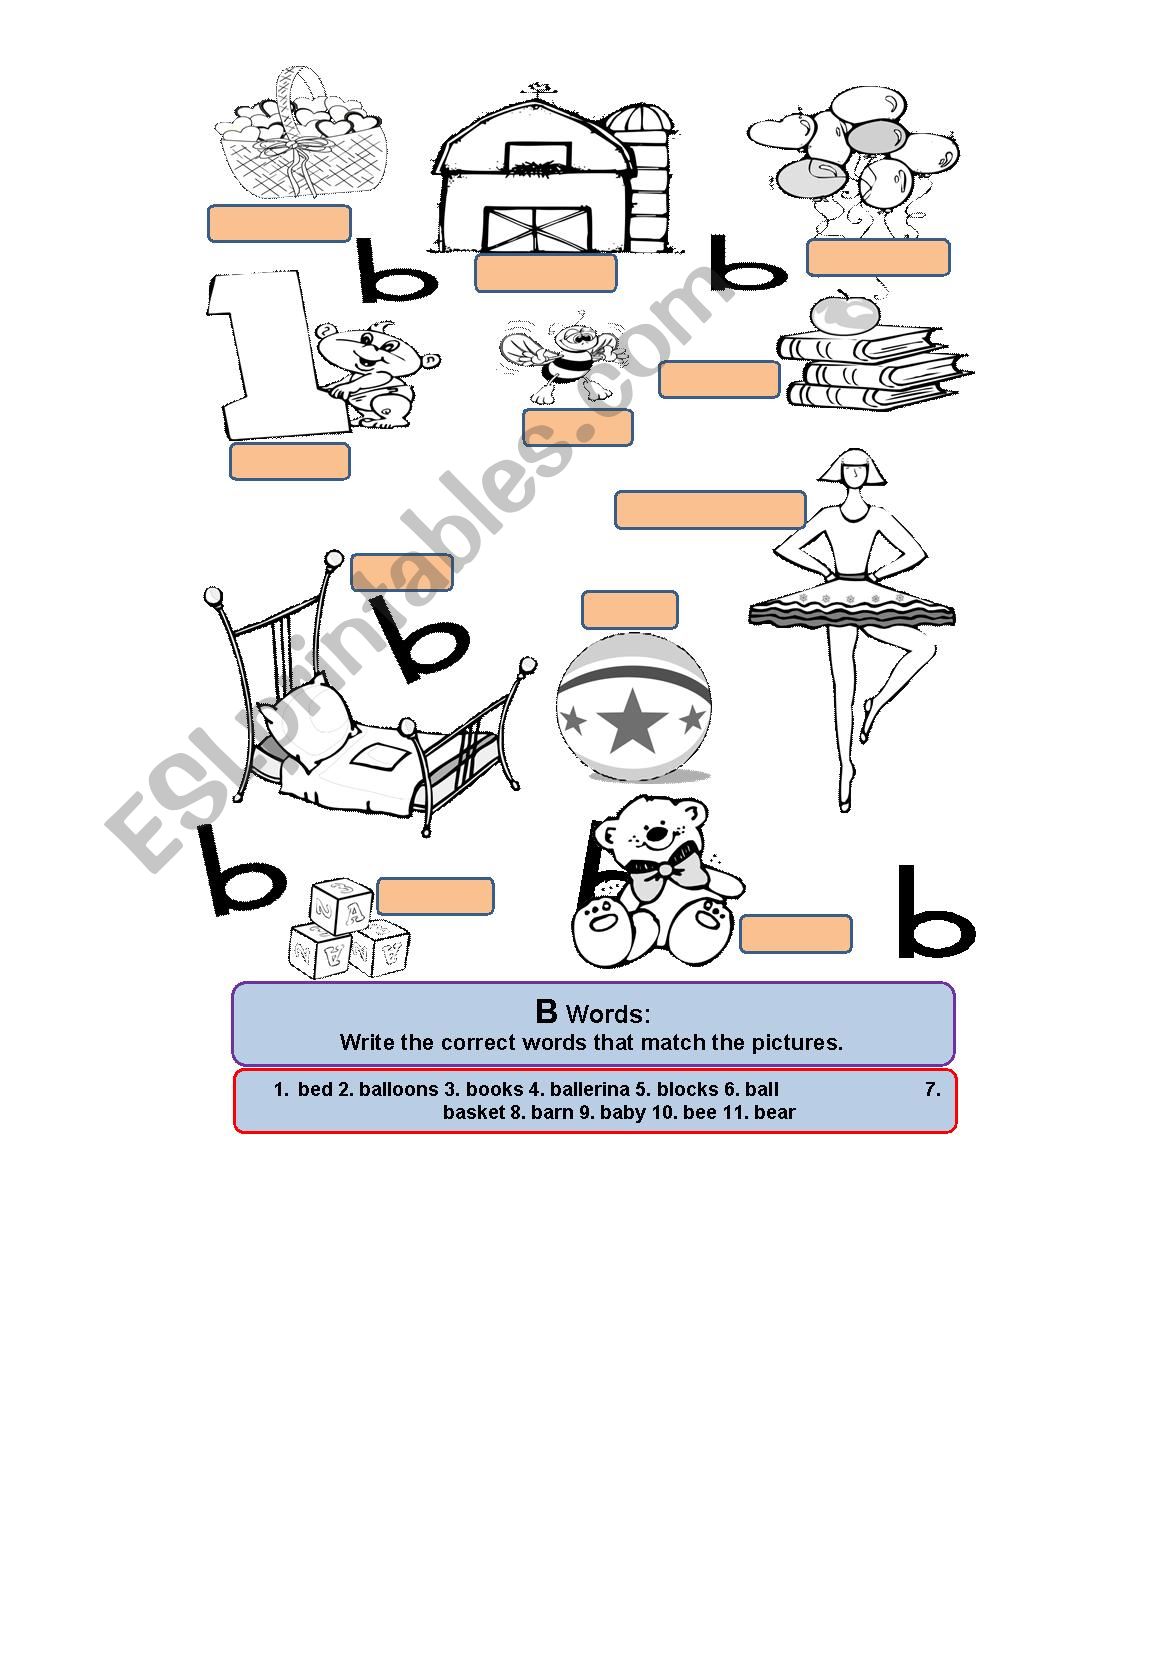 B Words Worksheet worksheet